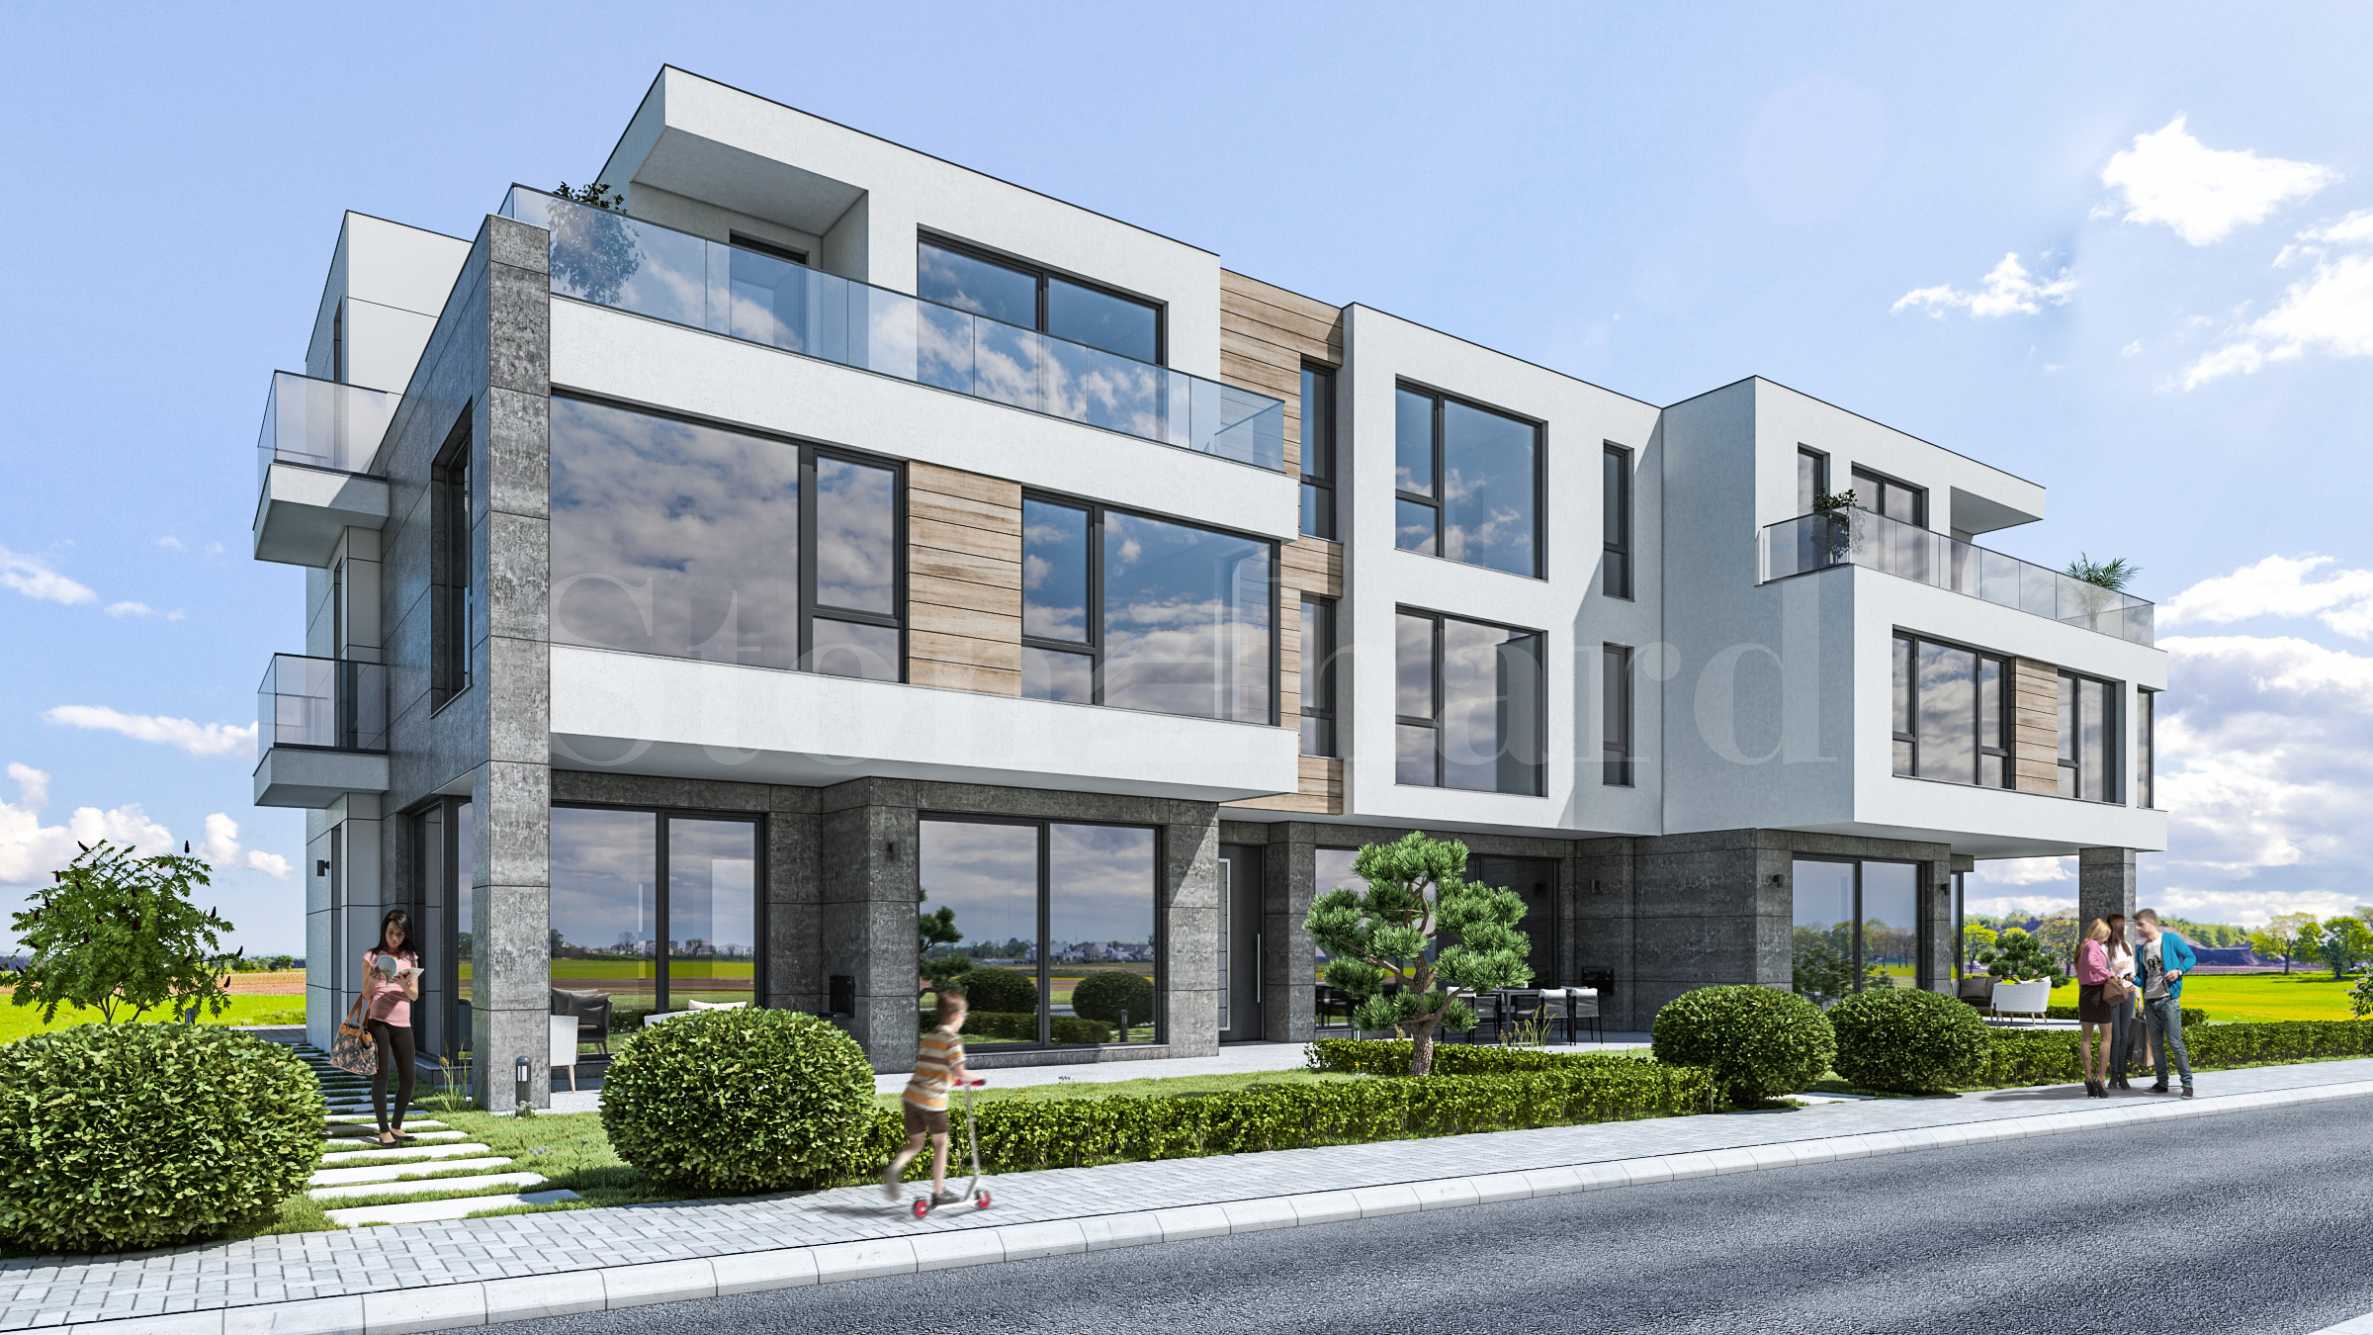 New terraced houses at the foot of Vitosha1 - Stonehard